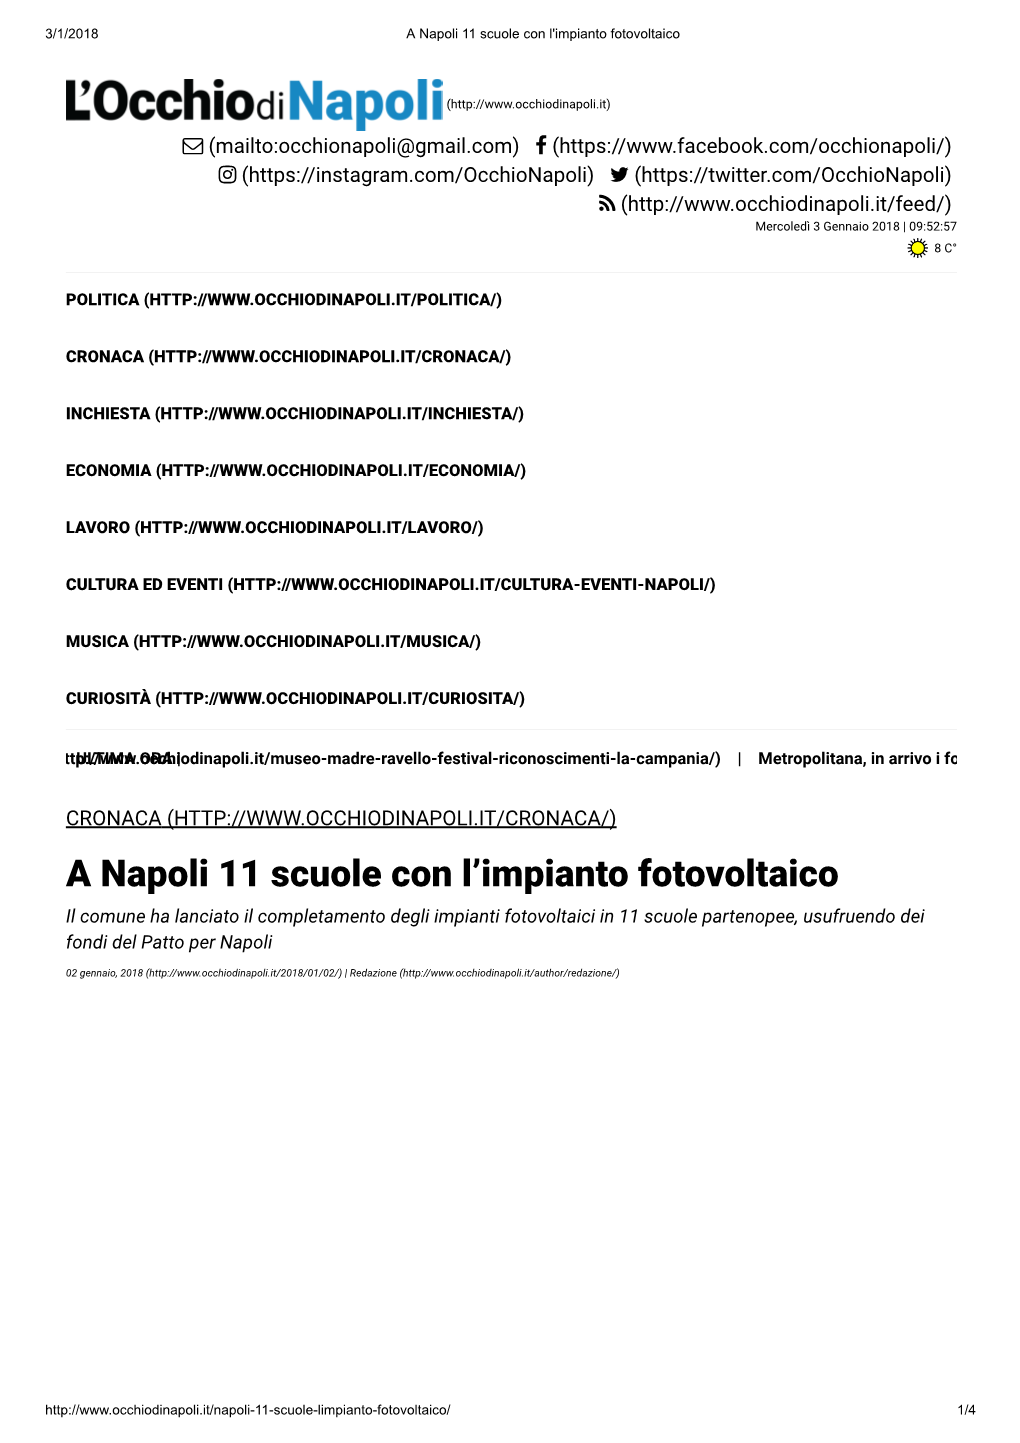 A Napoli 11 Scuole Con L'impianto Fotovoltaico